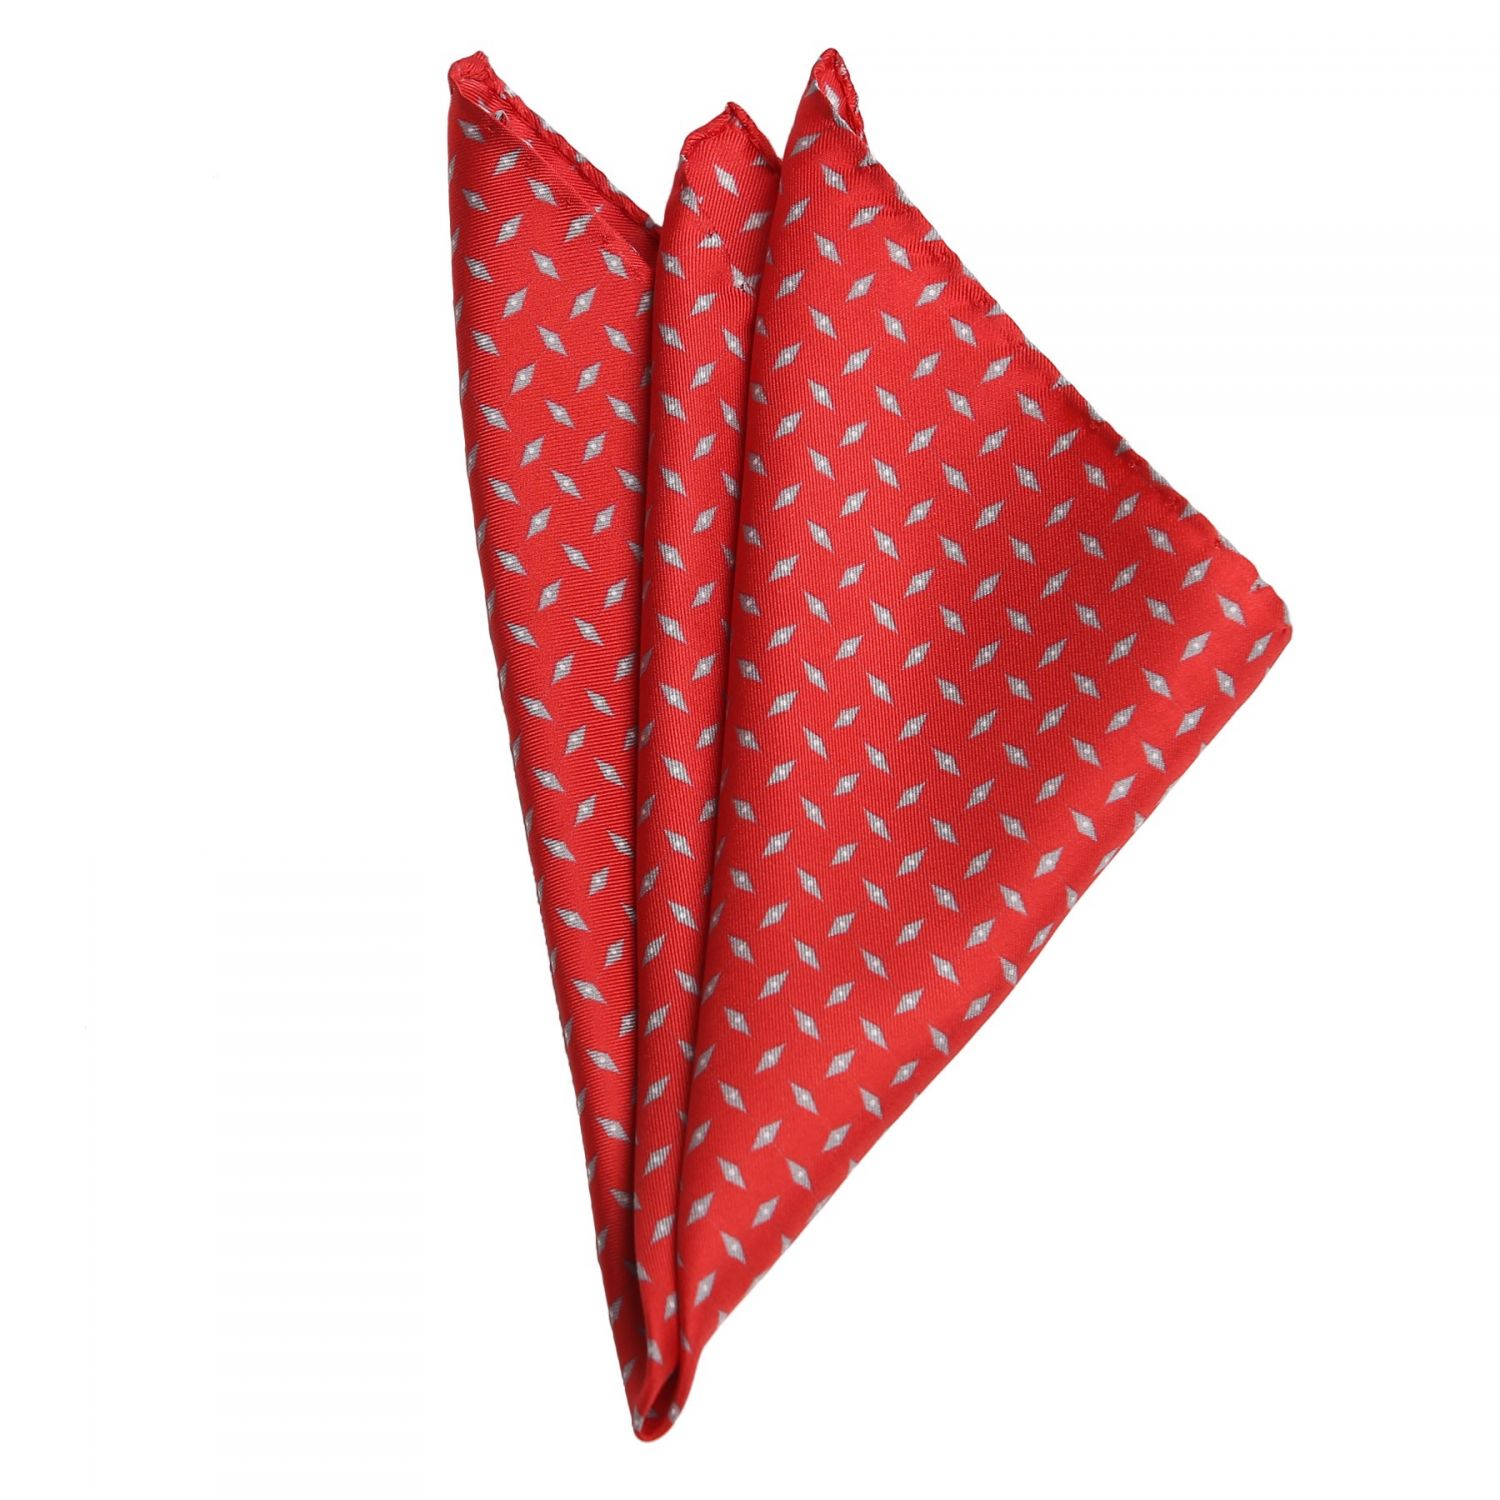 L. Biagiotti Grey Rhombus on Red Silk Pocket